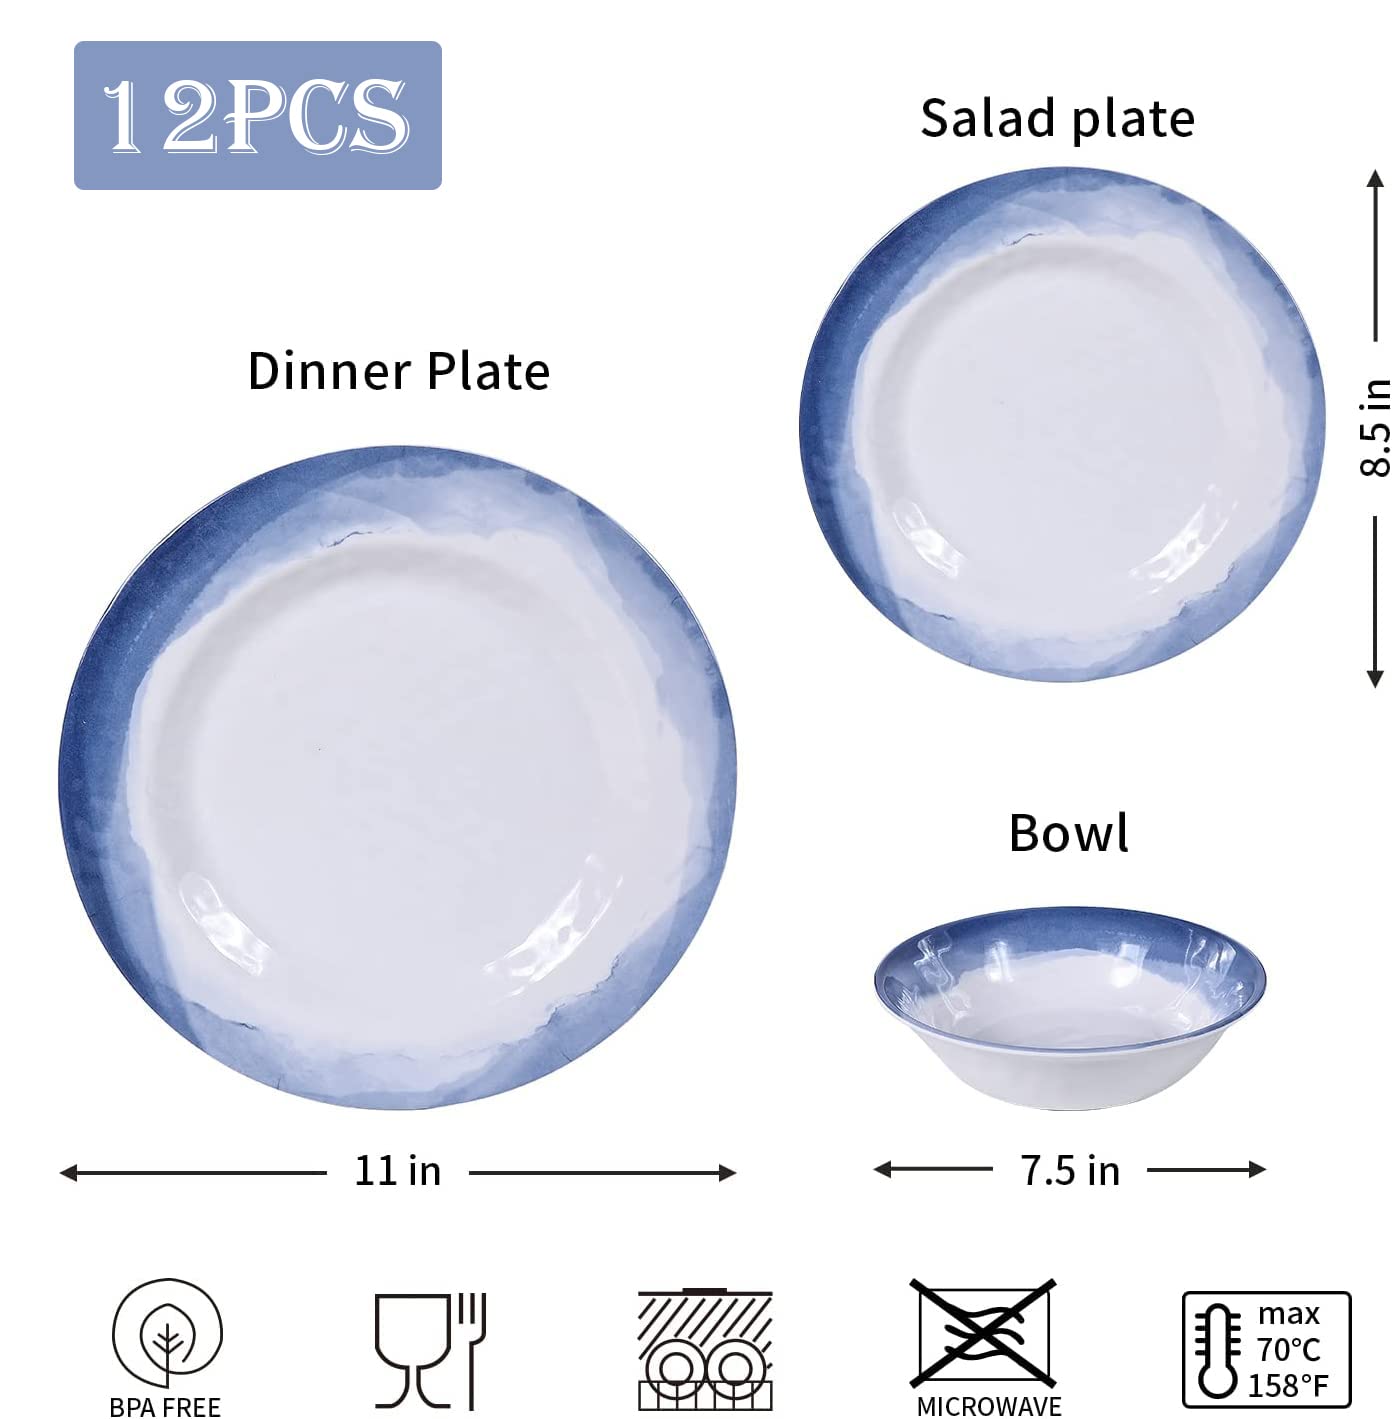 Lechoo Melamine Cereal Bowls set - 6pcs7.5in Soup Bowls, Dishwasher Safe, Durable,Breat-resistant (Blue 7.5in Bowls)